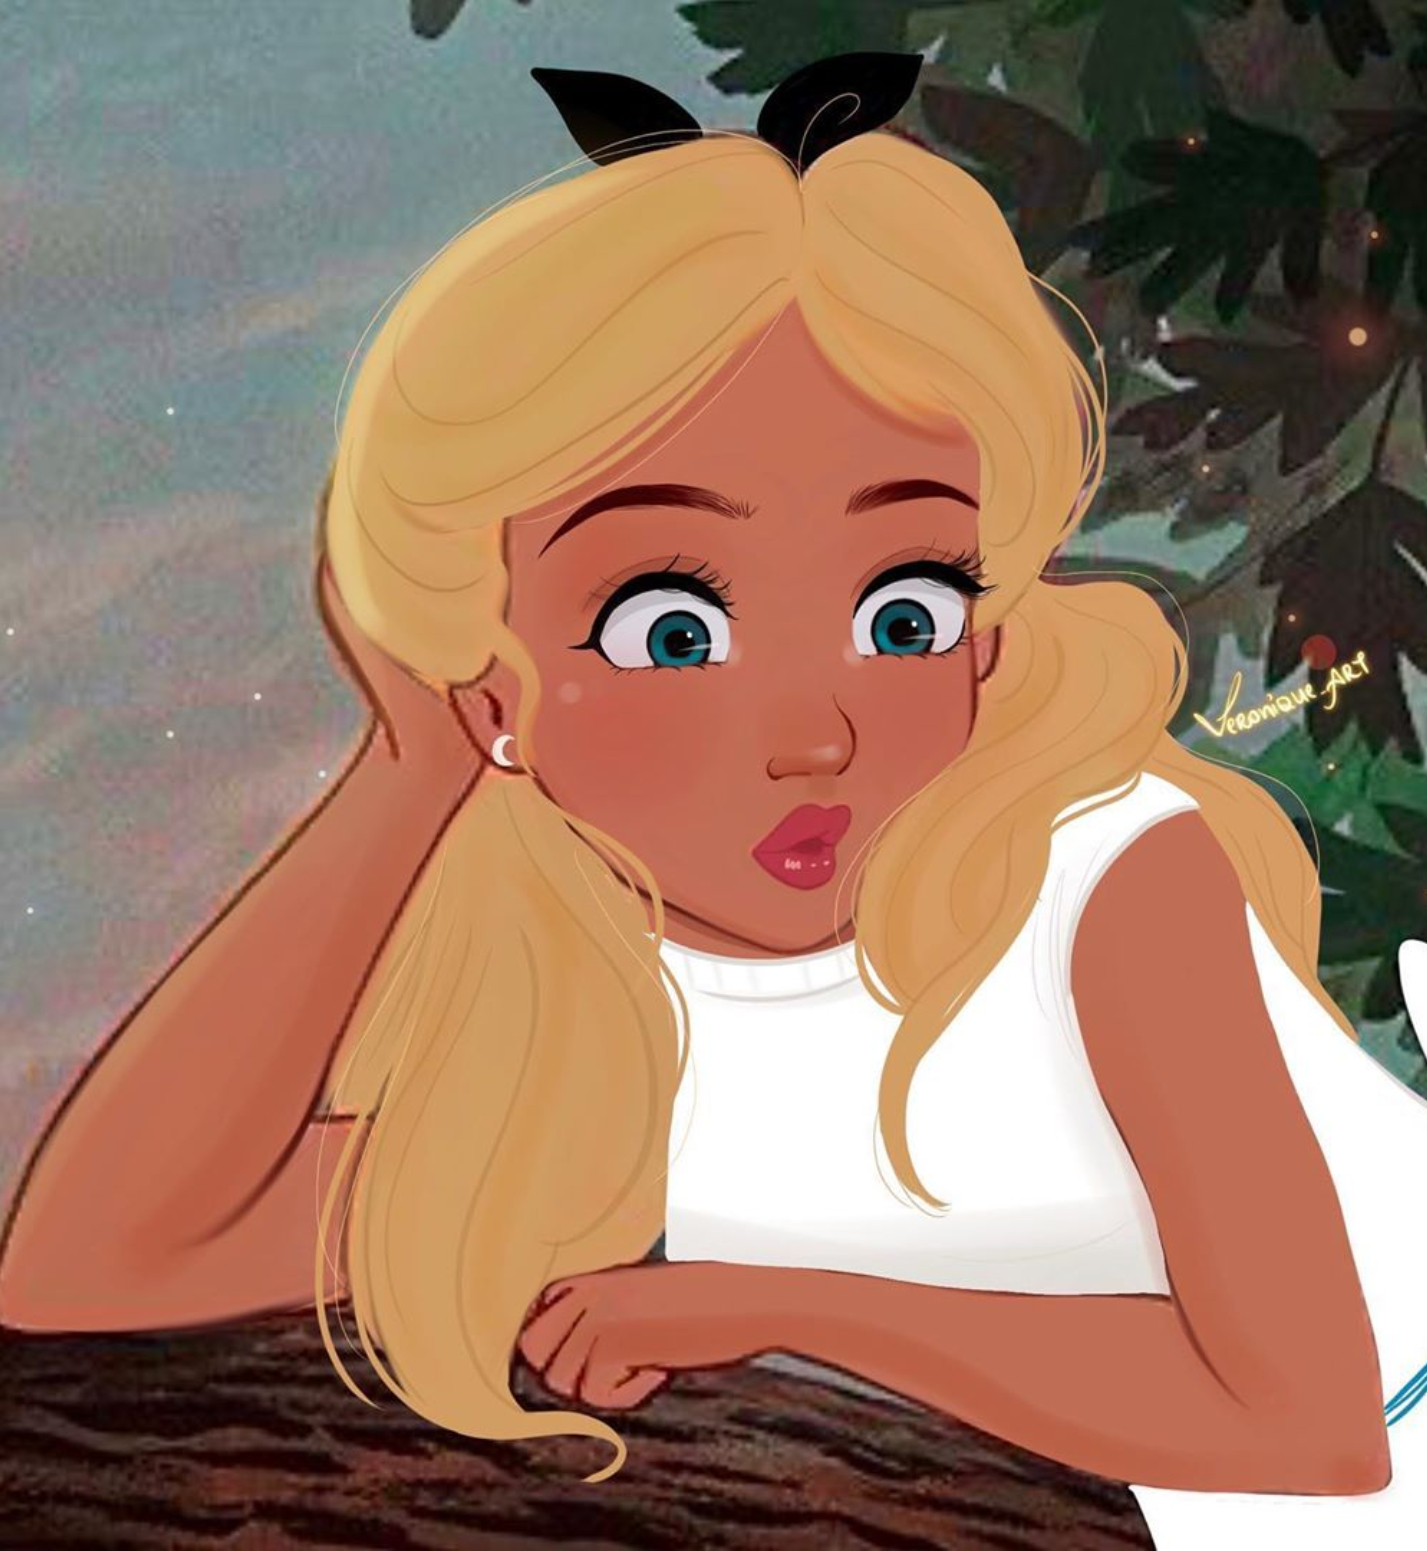 Ilustradora cambia el aspecto de las princesas Disney - Grupo Milenio